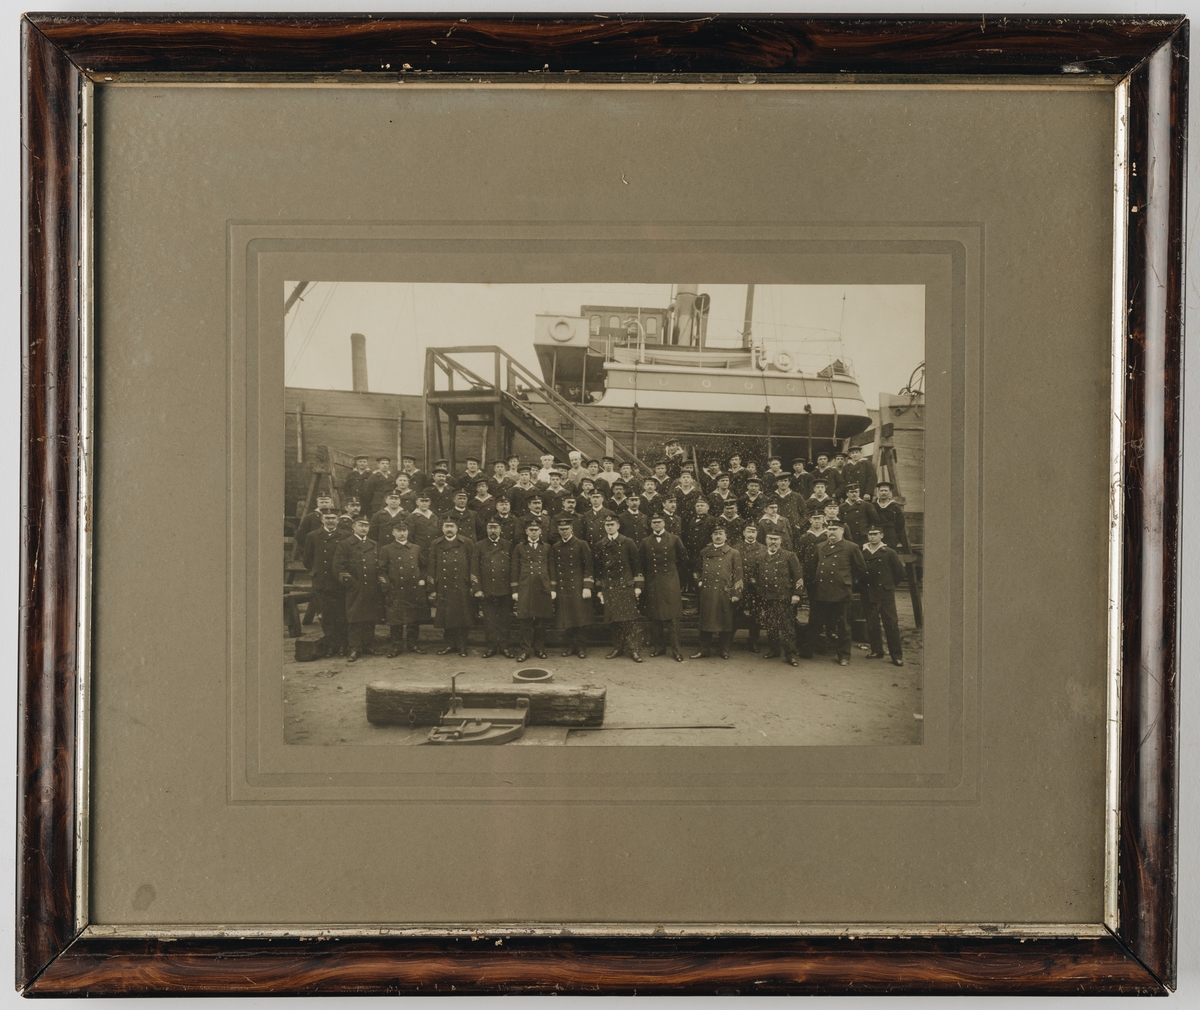 Bilden visar en grupp officerare, underofficerare och manskap från Svenska Flottan som har tagit uppställning för gruppfotografering framför ett träfartyg som ligger på land i ett hamnområde.